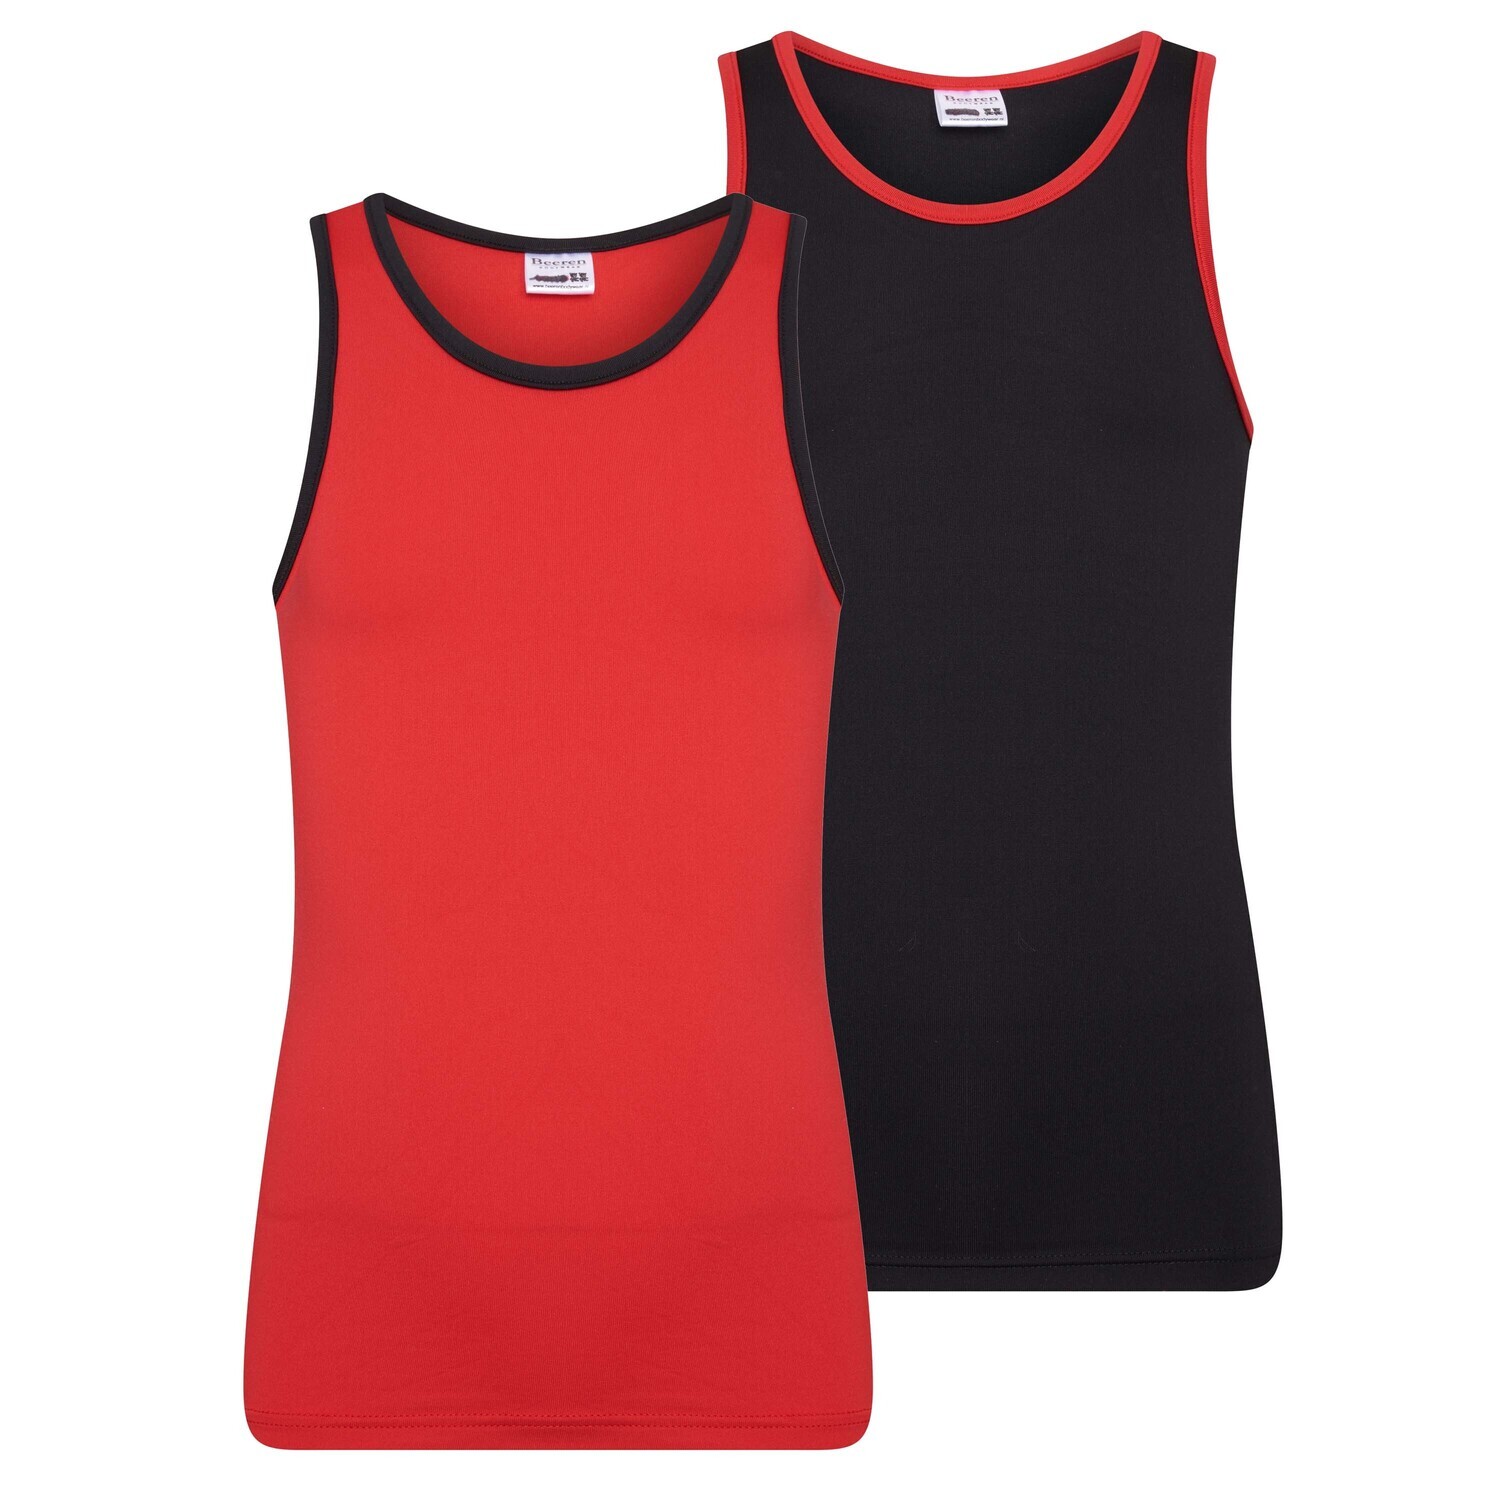 (08-250) Meisjes hemd Mix and Match 2-Pack rood/zwart 158/164